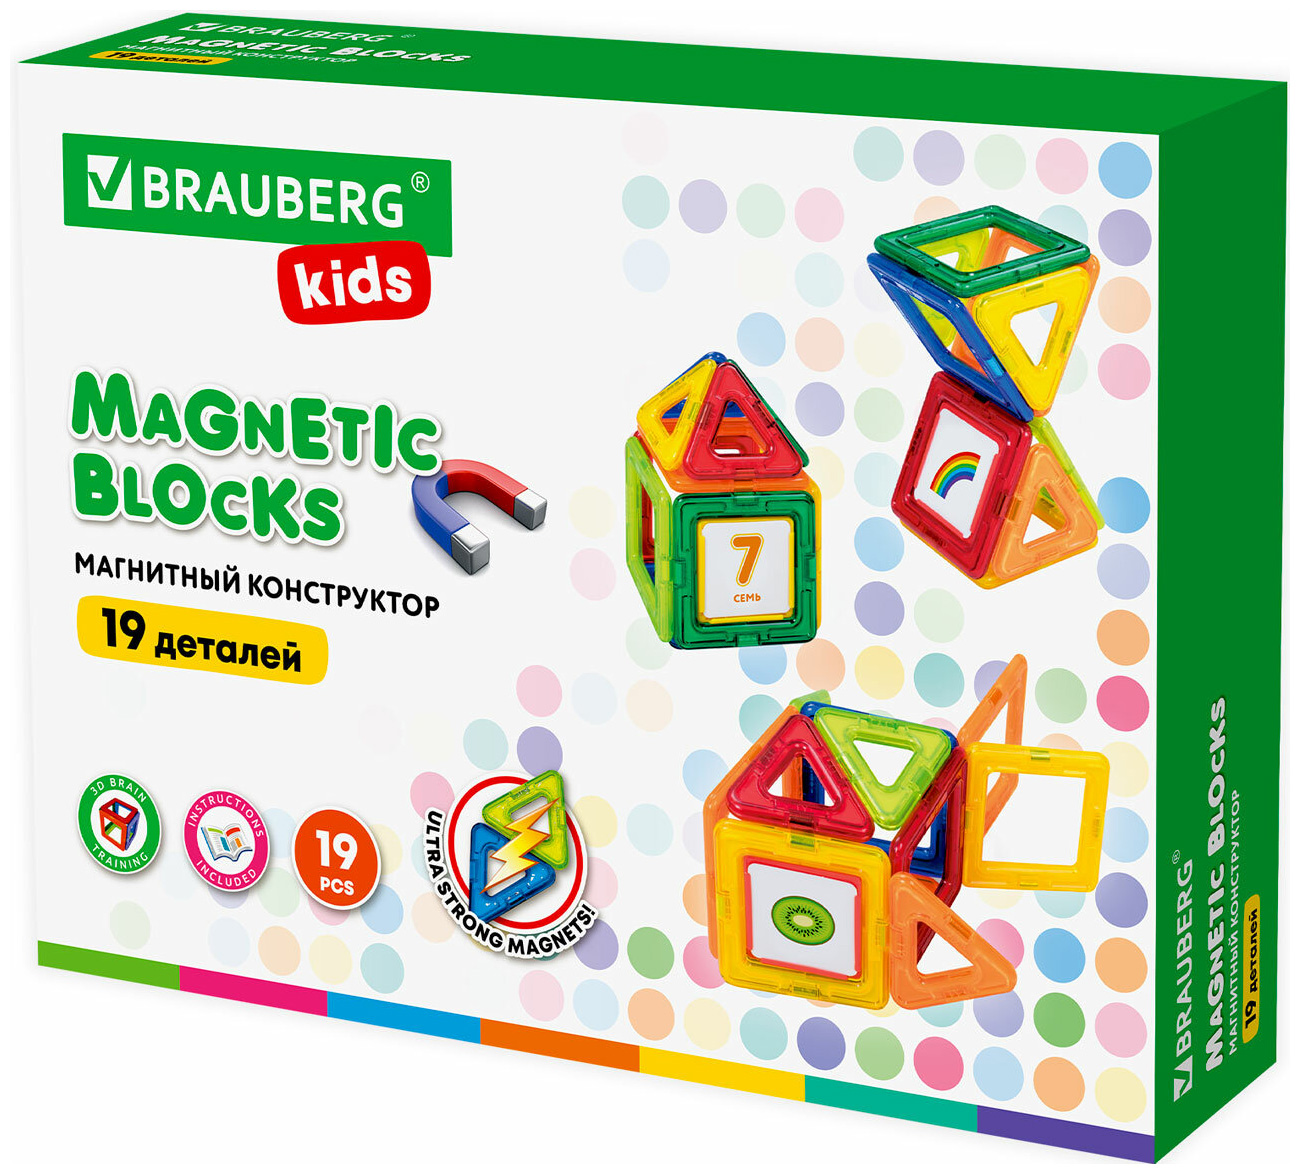 Конструктор магнитный Brauberg KIDS MAGNETIC BLOCKS-19 663843 конструктор магнитный brauberg kids big magnetic blocks 42 663846